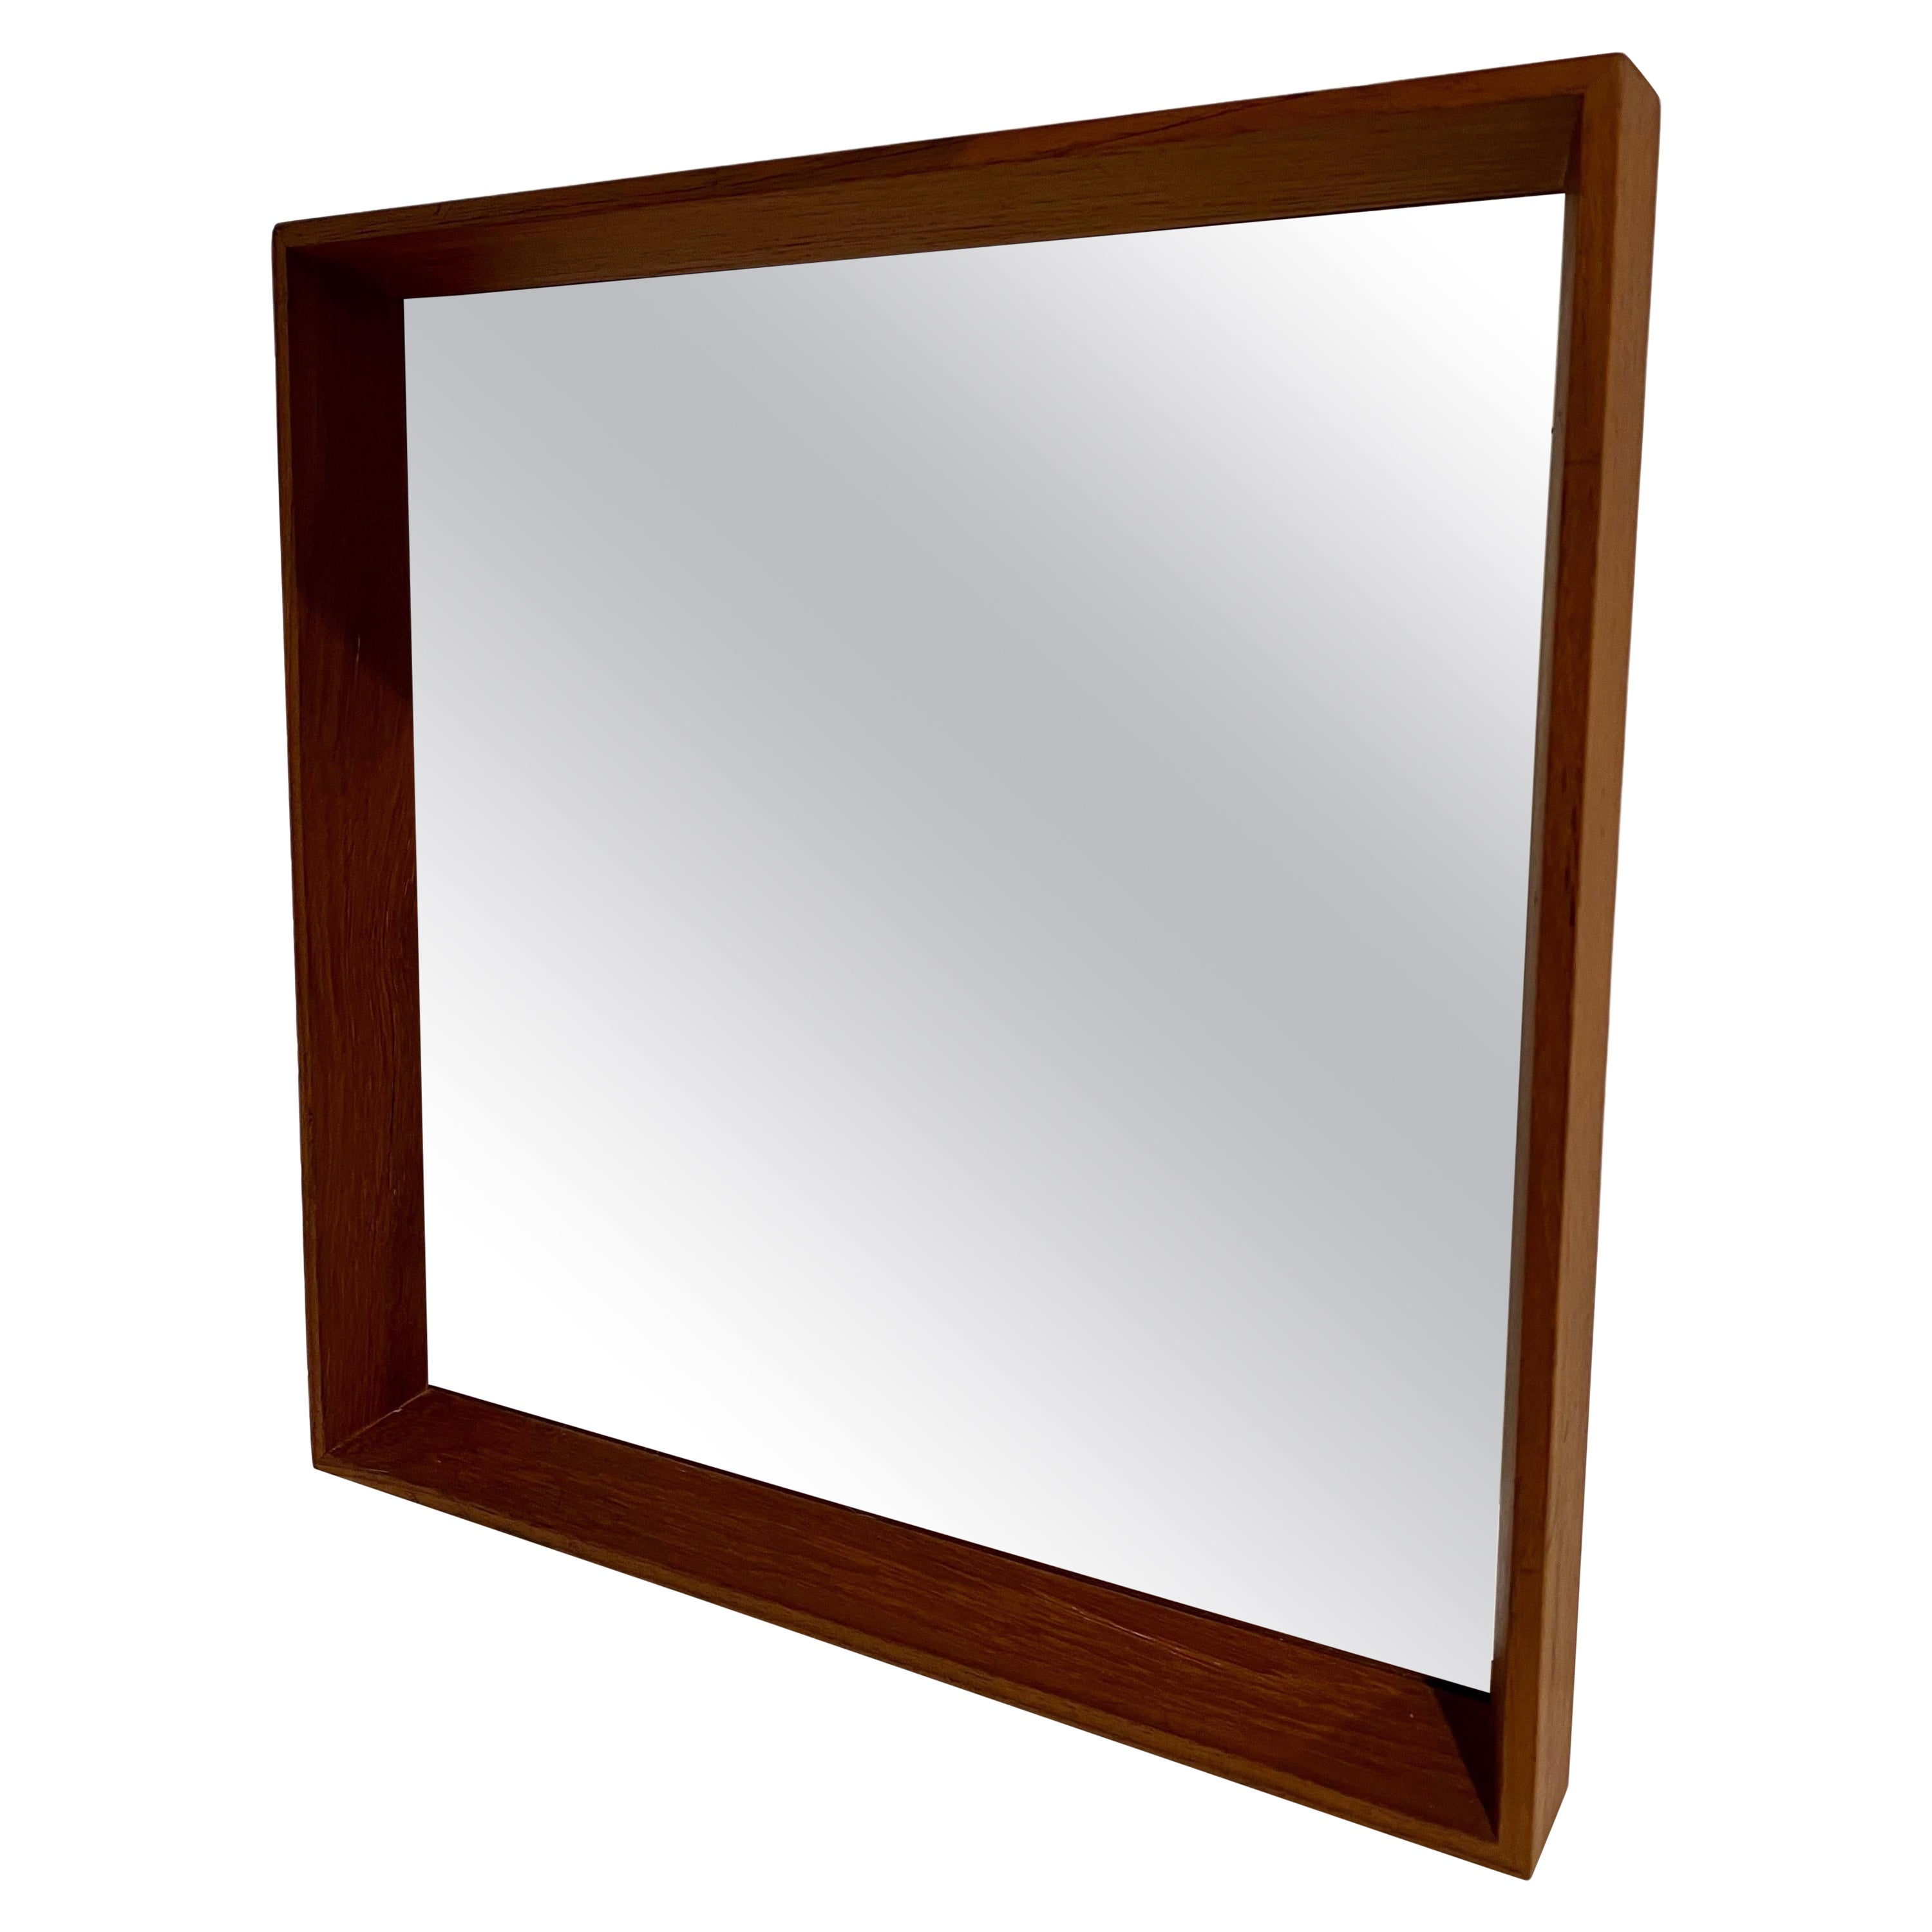 Danish Modern Solid Teak Frame Mirror Attributed to Pedersen & Hansen